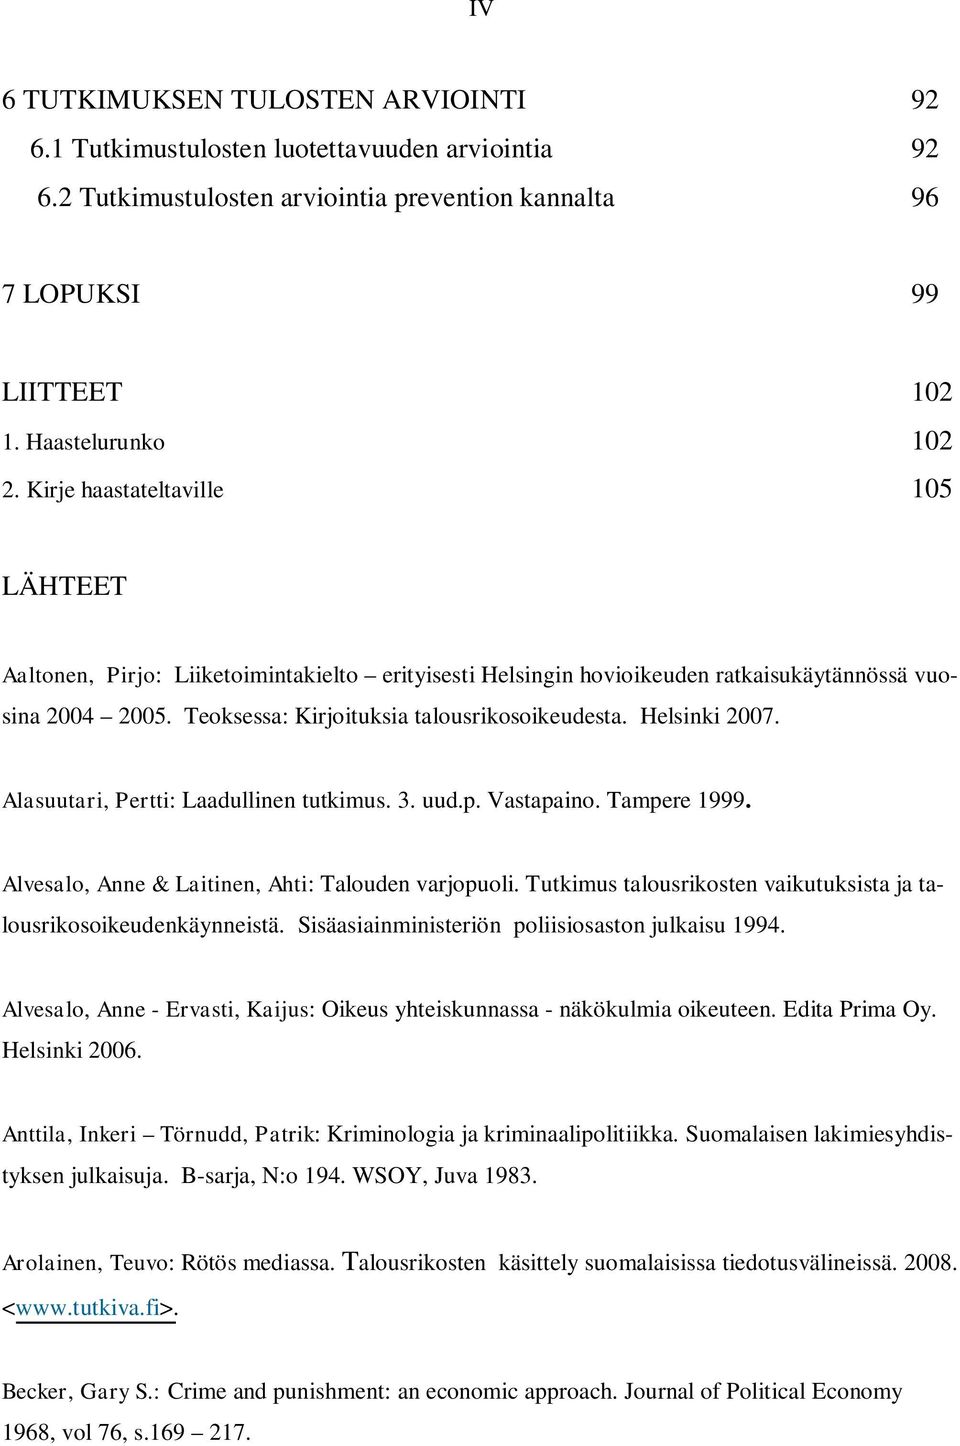 Helsinki 2007. Alasuutari, Pertti: Laadullinen tutkimus. 3. uud.p. Vastapaino. Tampere 1999. Alvesalo, Anne & Laitinen, Ahti: Talouden varjopuoli.